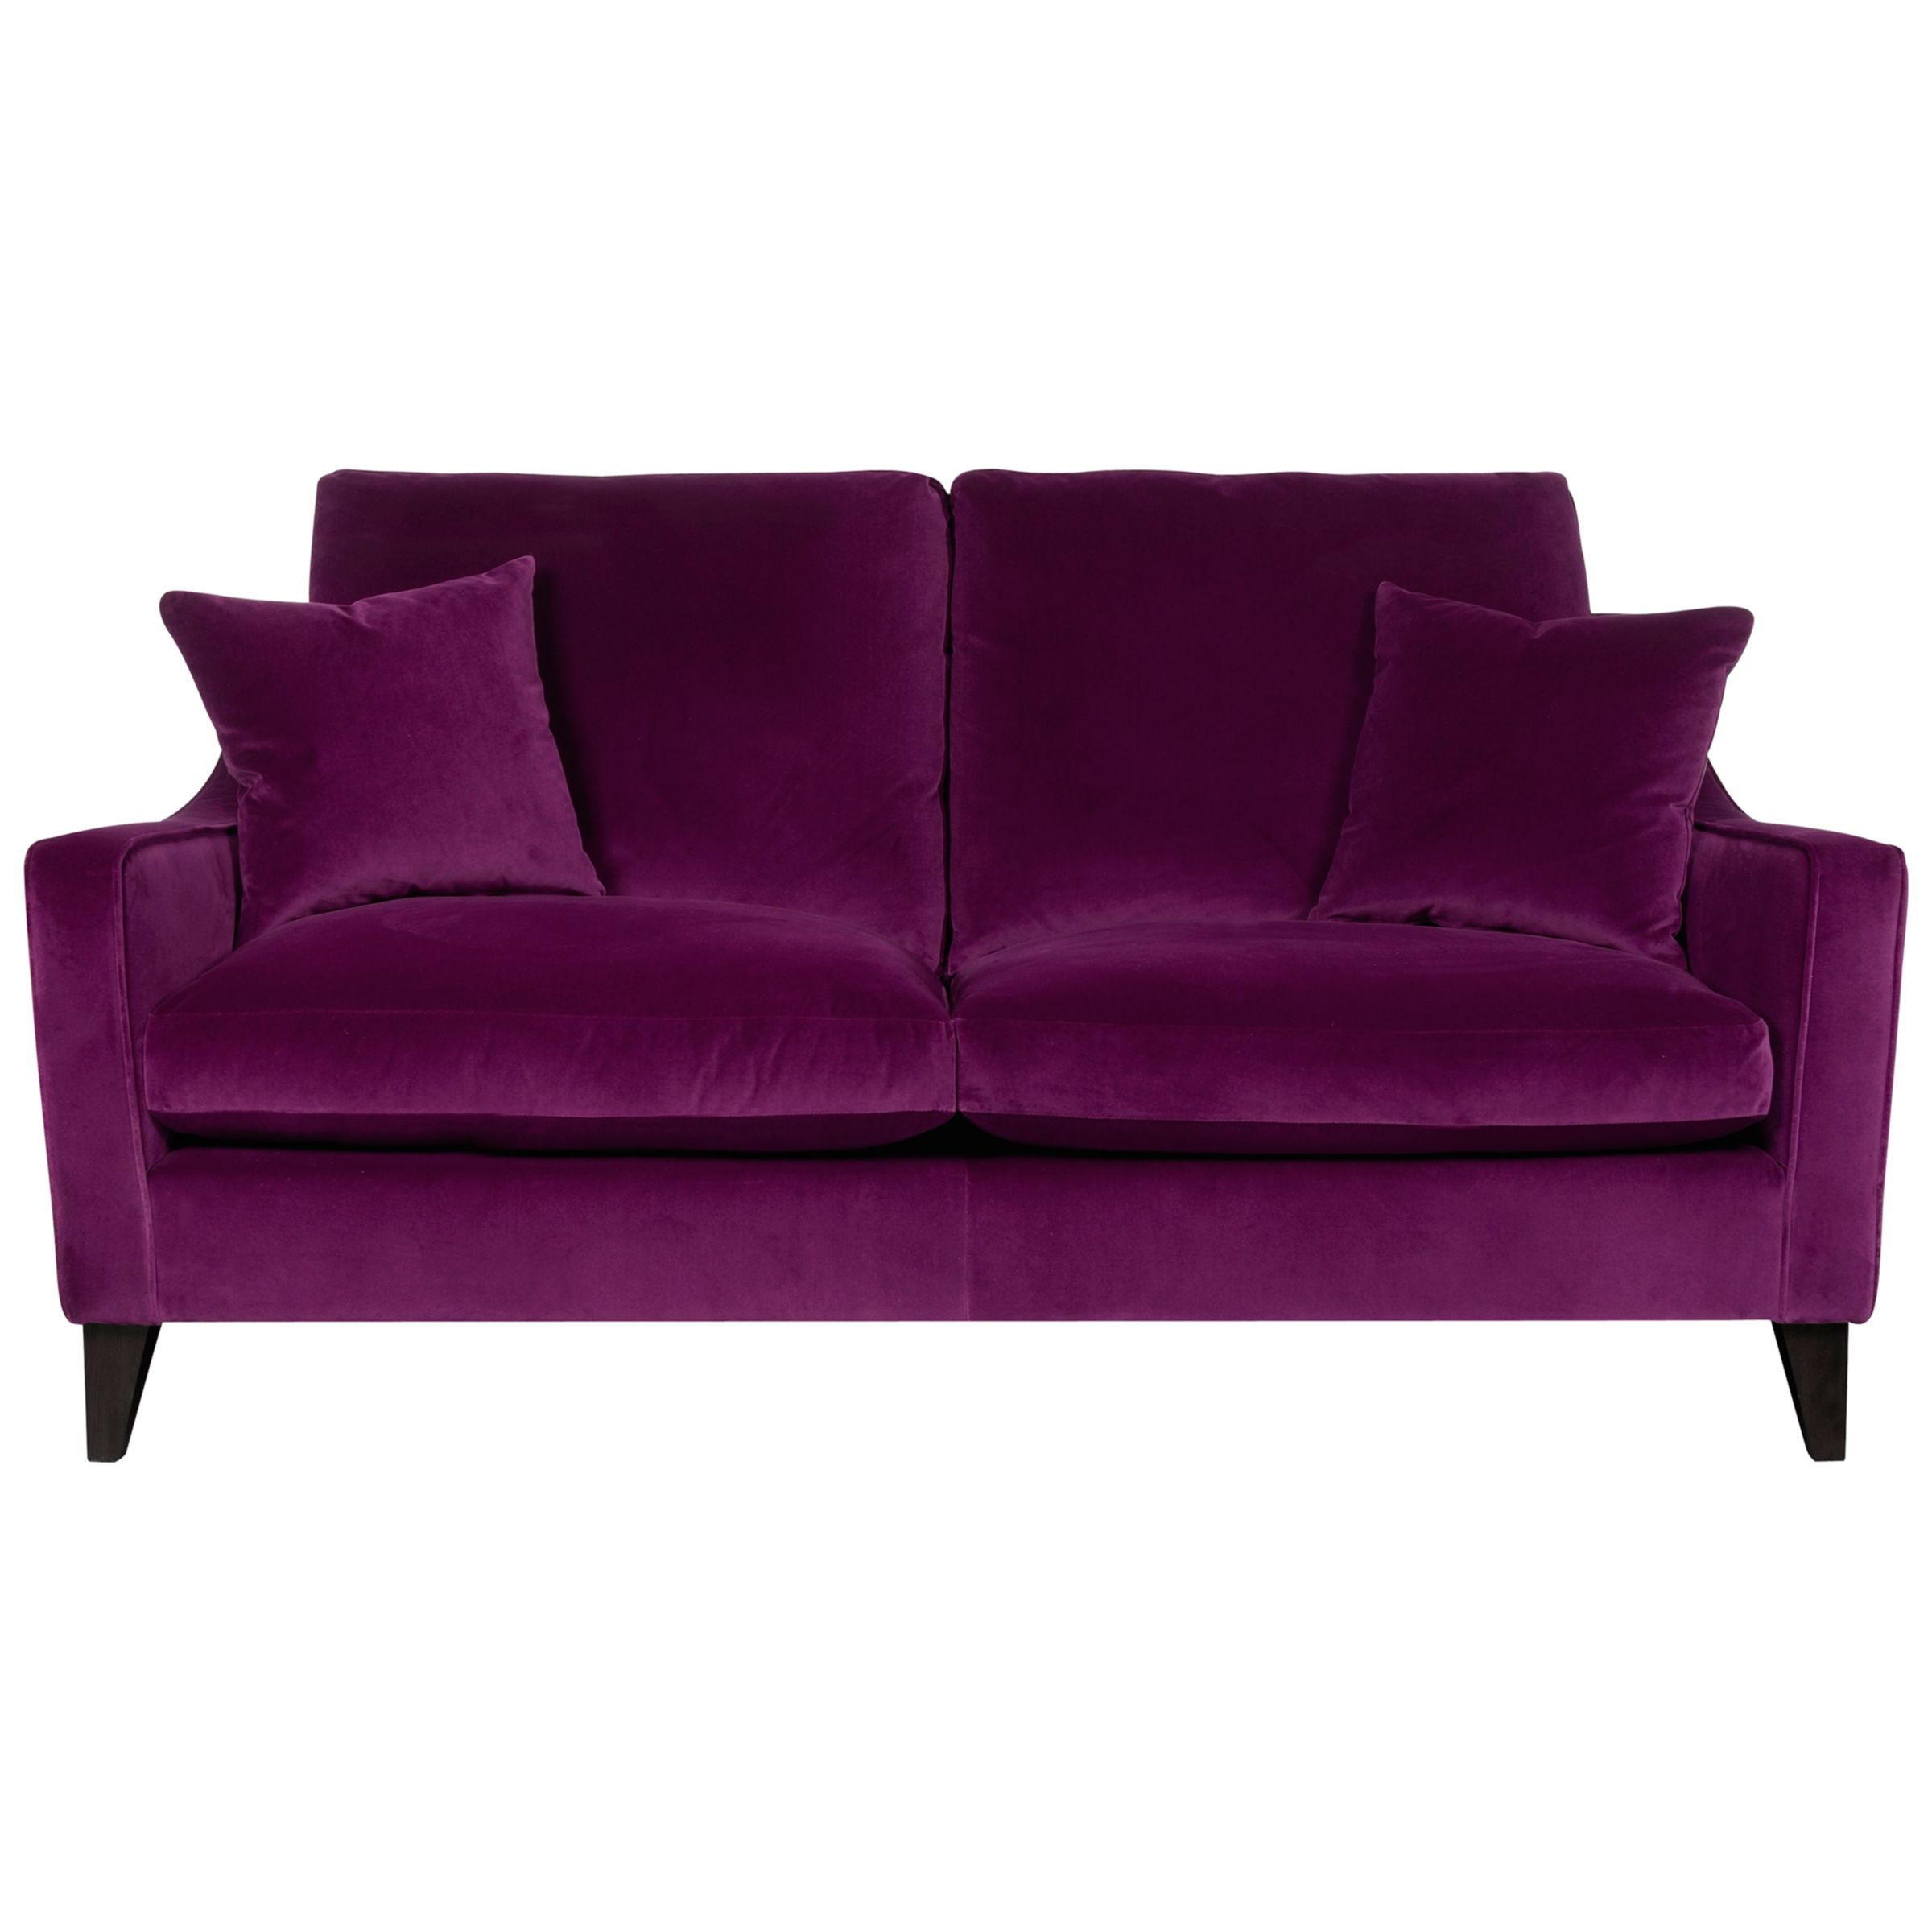 John Lewis Vivien Medium Sofa, Magenta, width 175cm